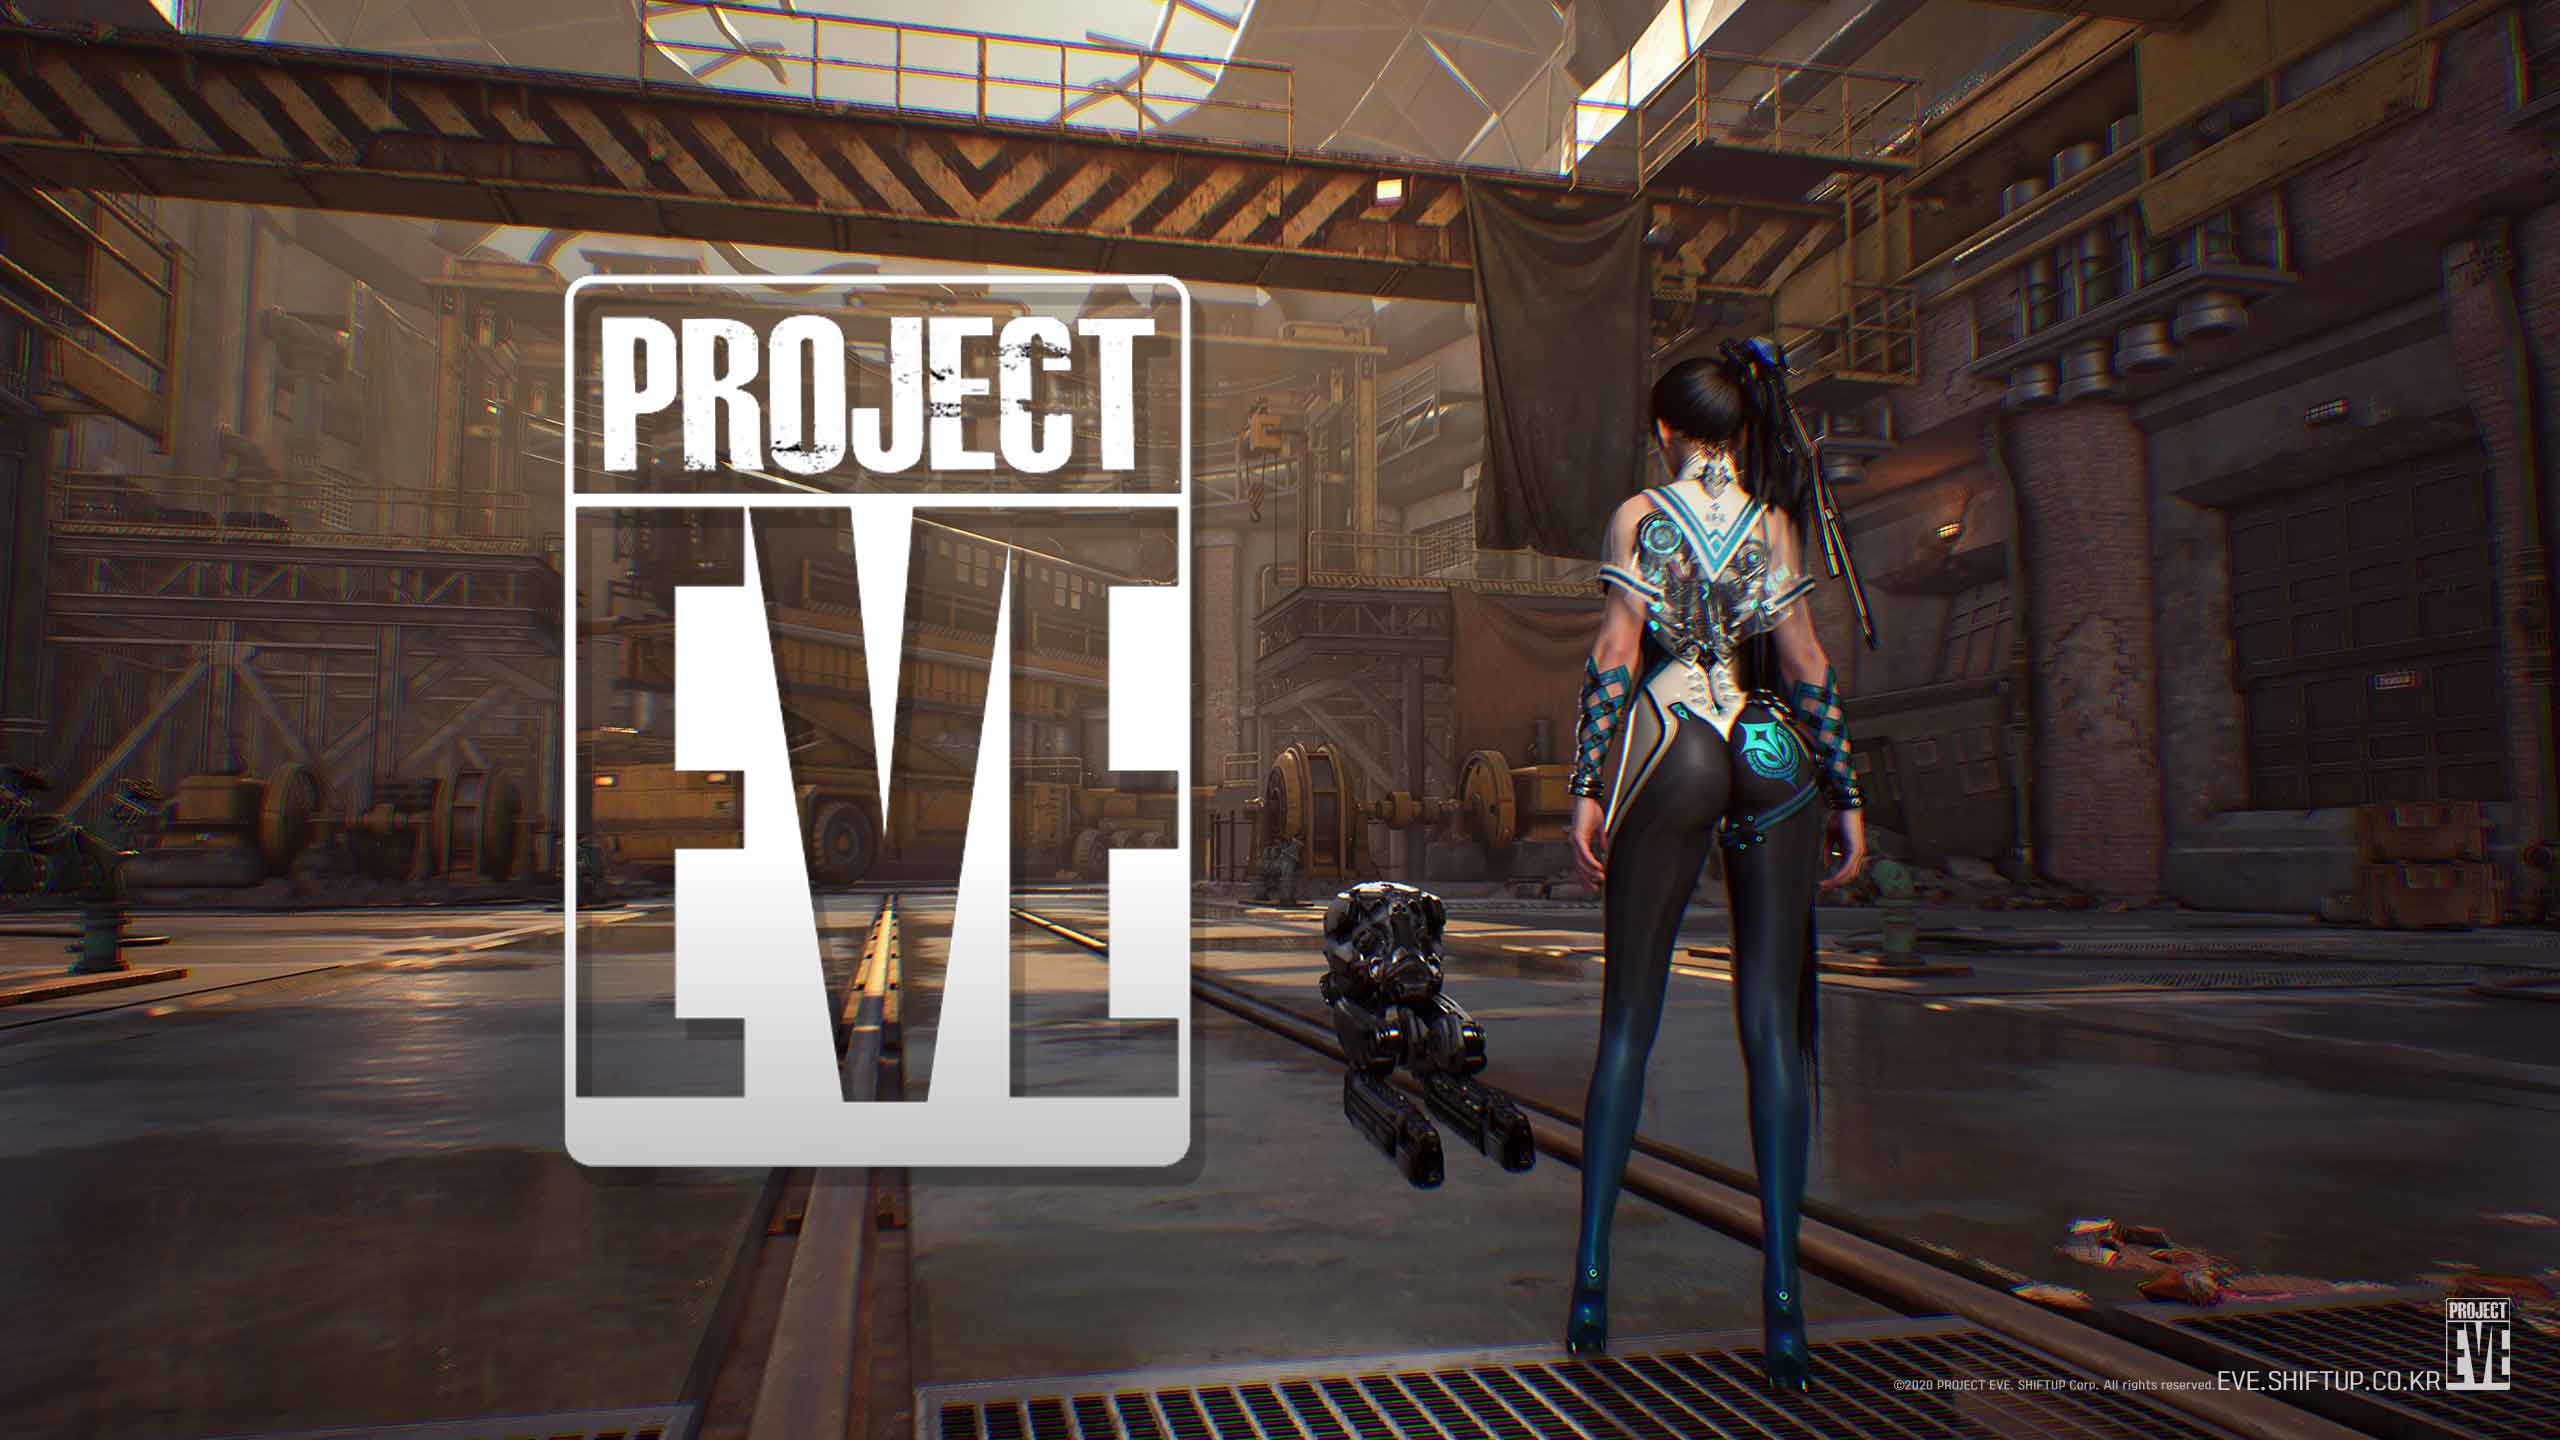 Project Eve El Increible Juego Coreano Revela Impresionante Gameplay